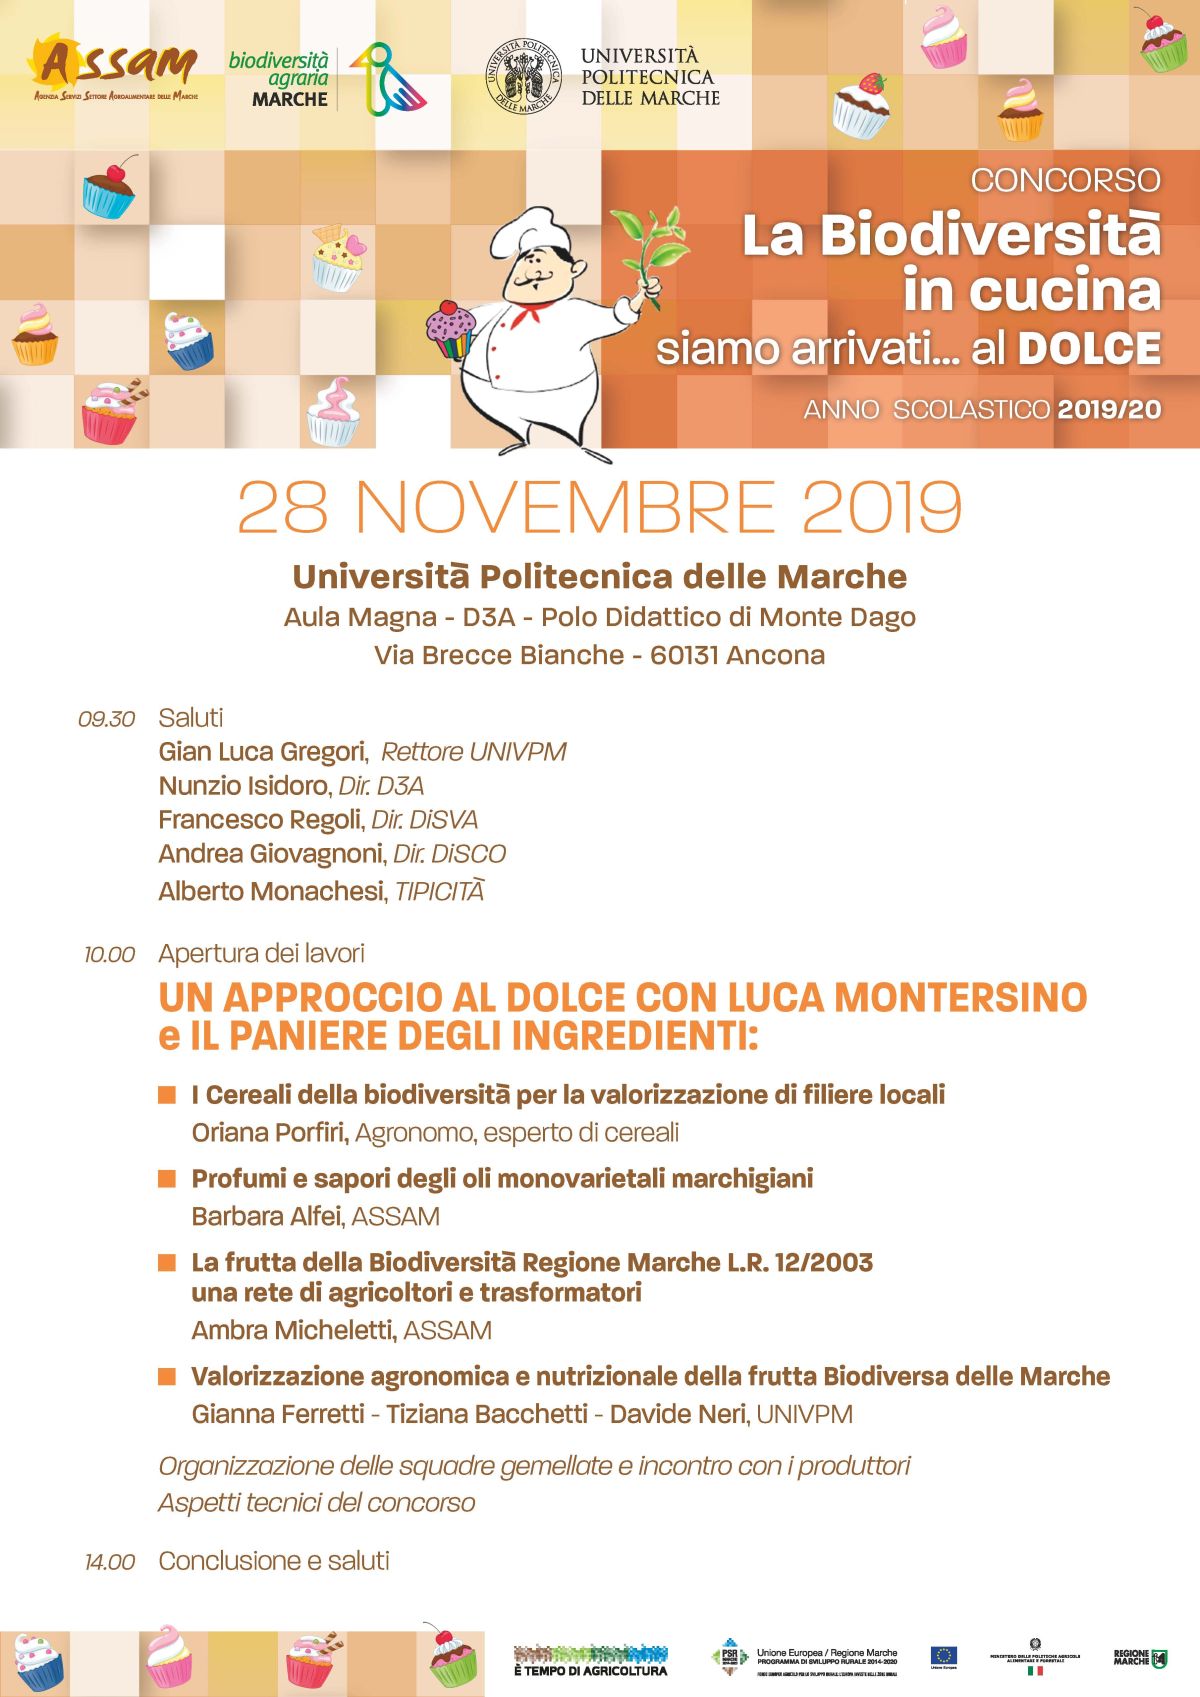 28/11/2019: Giornata divulgativa concorso "Biodiversità in cucina a.s. 2019 - 2020"